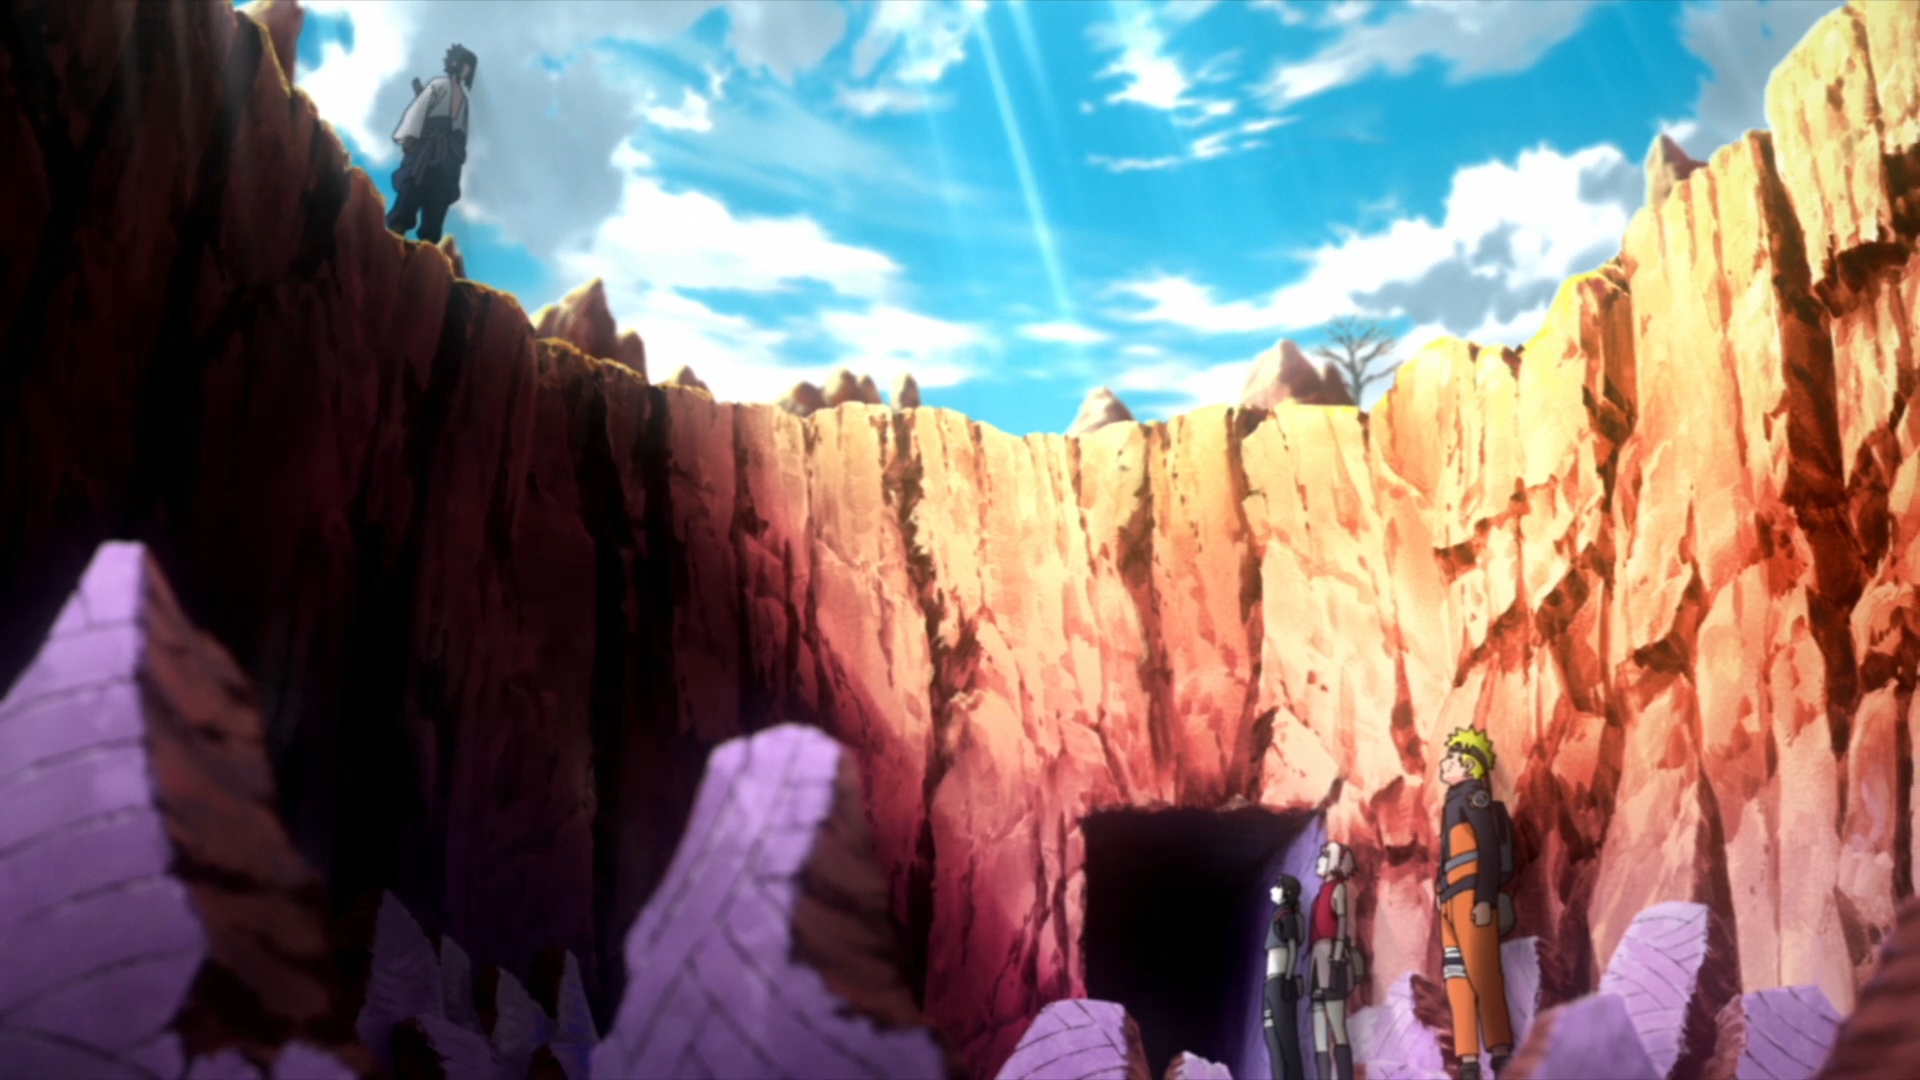 Naruto Shippuden Dublado - Episodio 51 - Reencontro Online - Animezeira